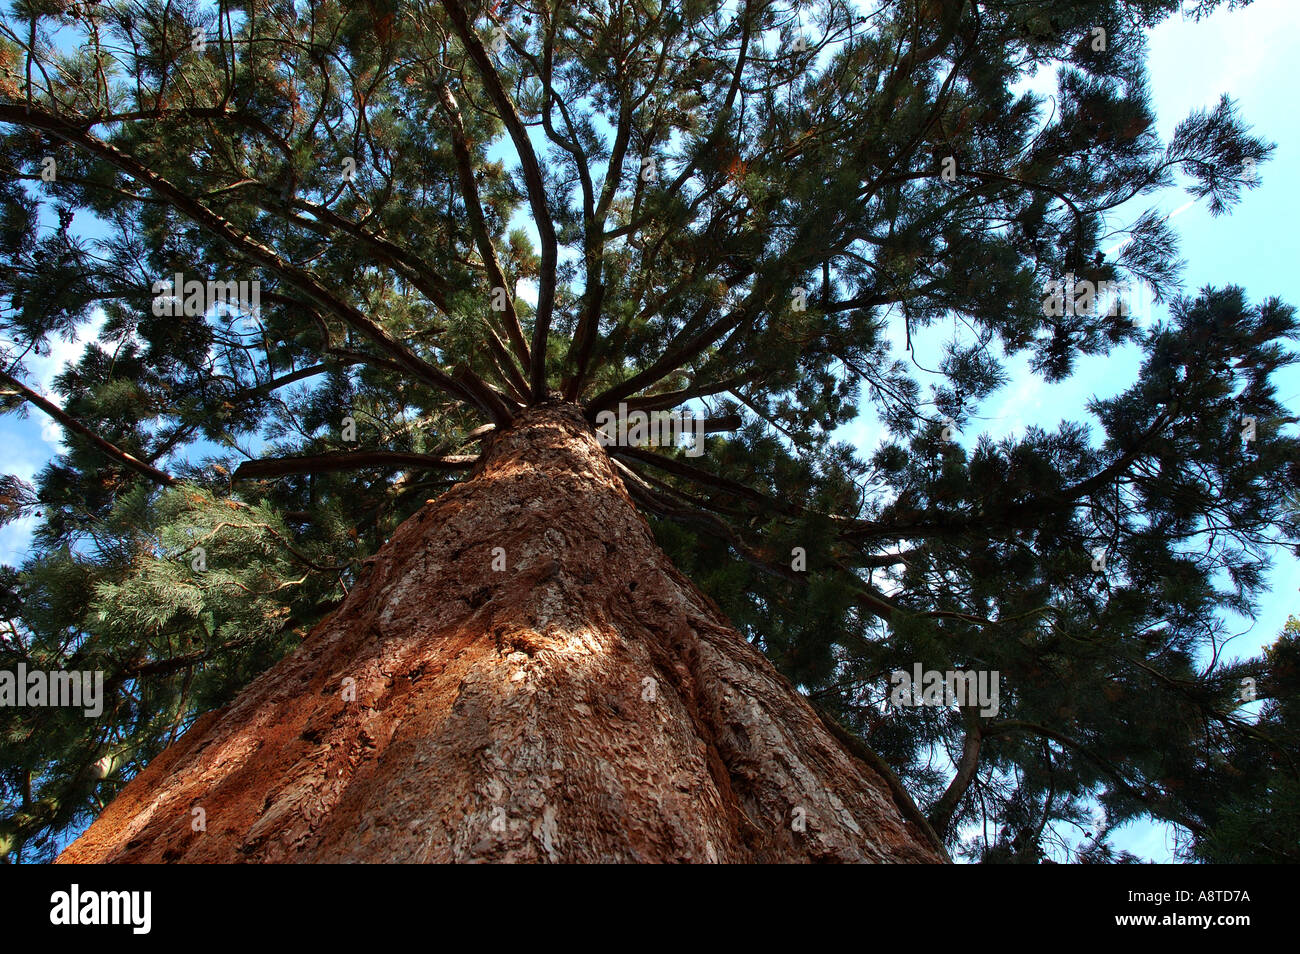 Громадные ели поднимались высоко. Секвойя дерево. Секвойядендрон. Секвойядендрон гигантский пендулум. Sequoia sempervirens.